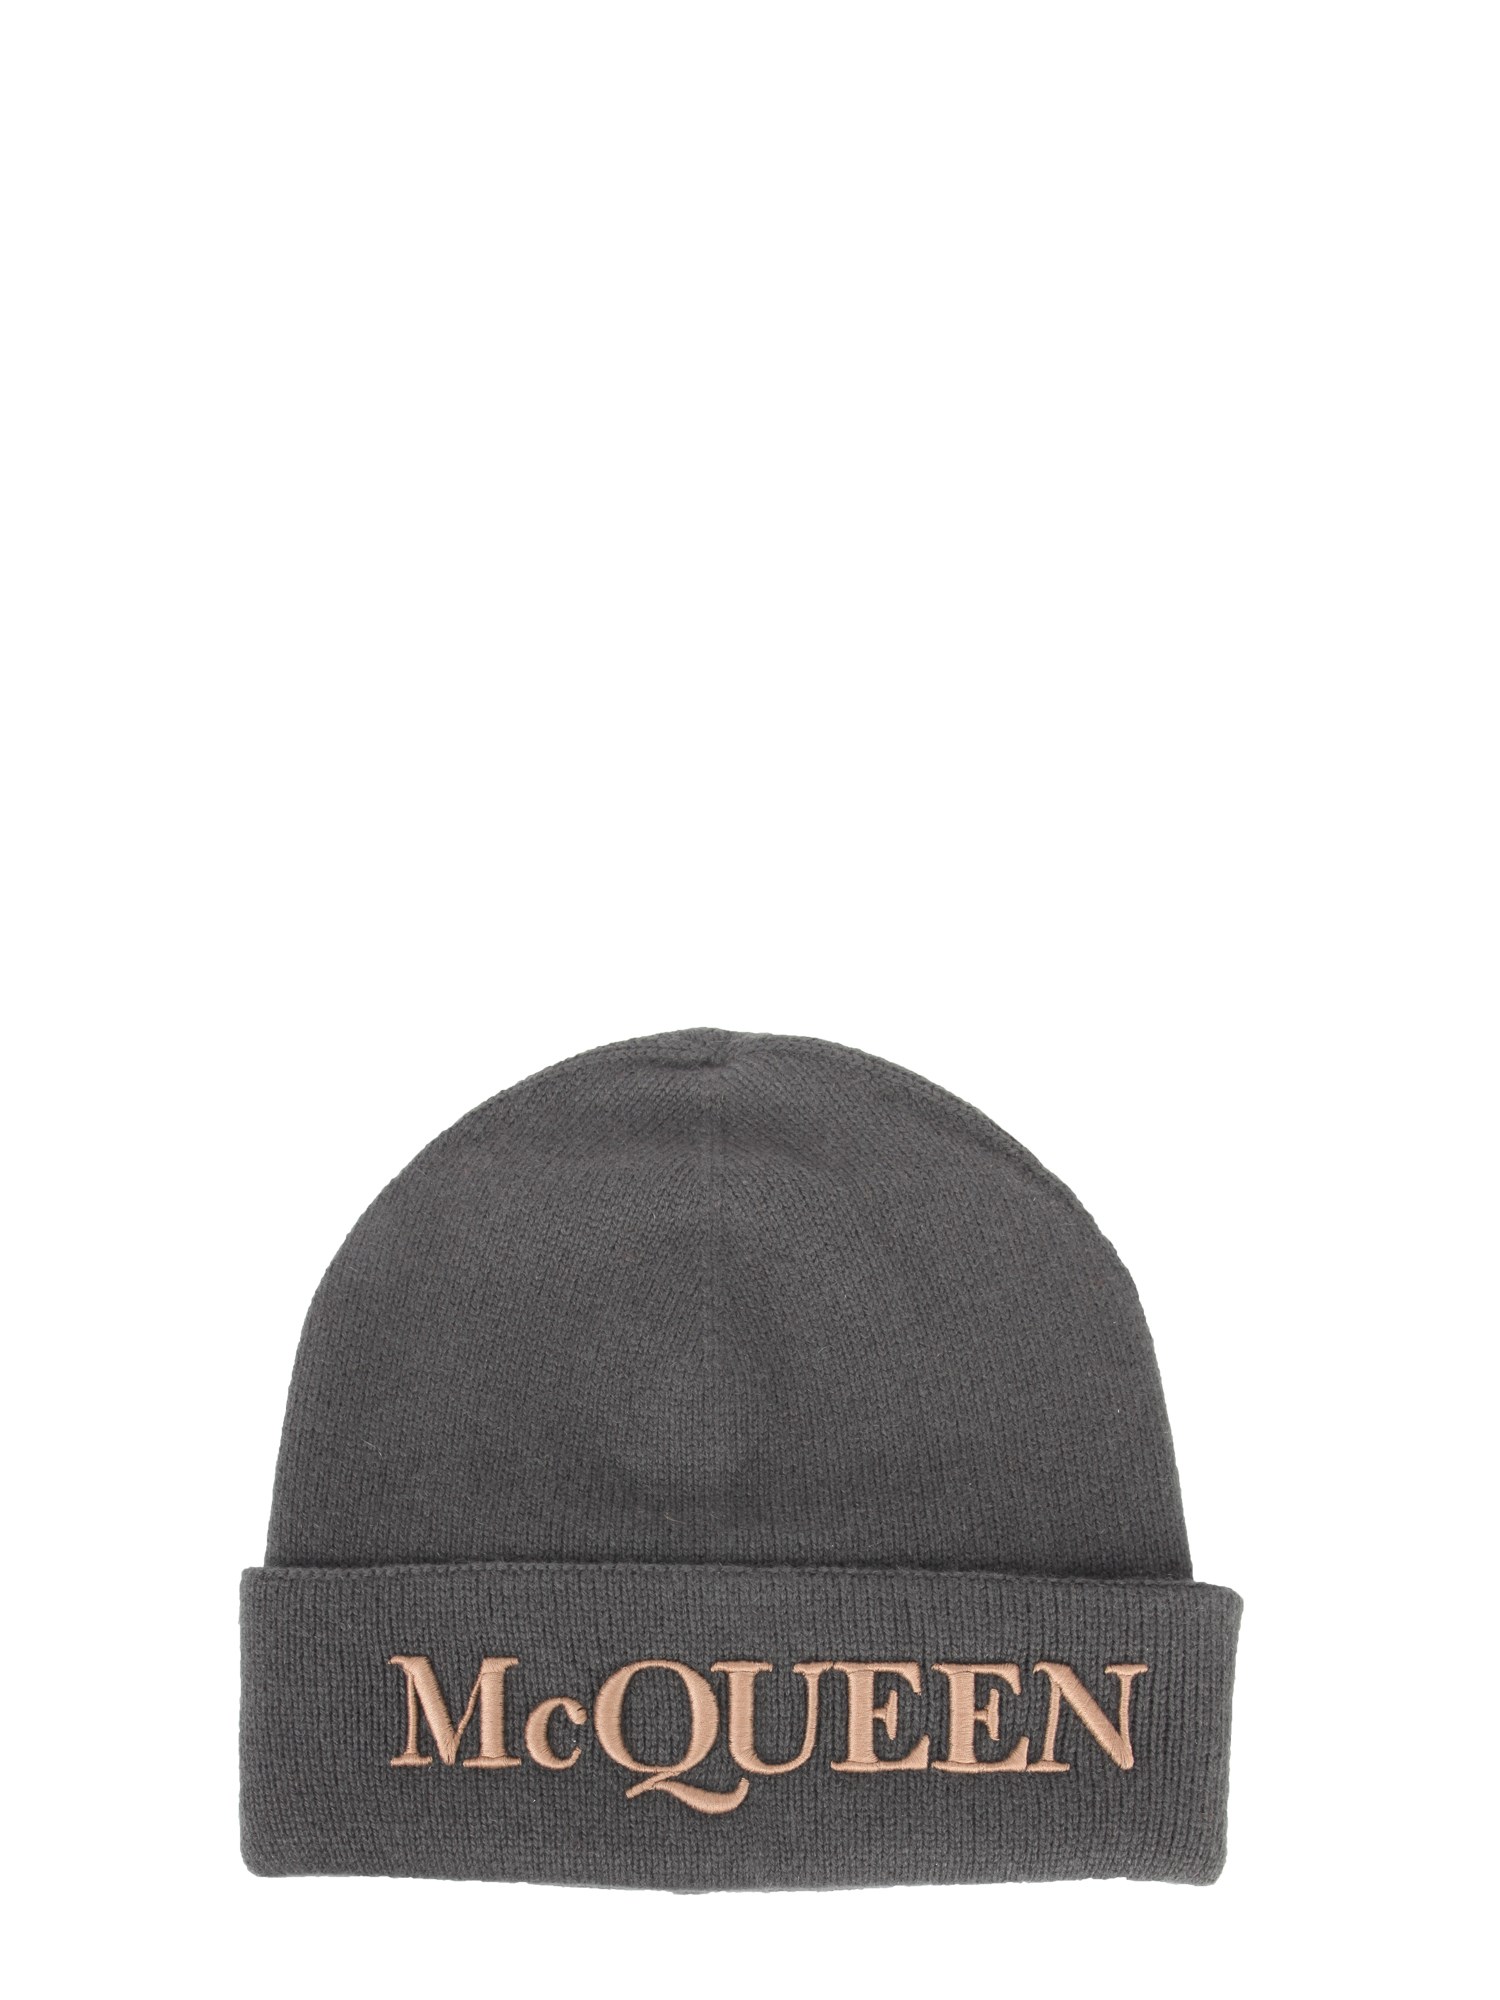 alexander mcqueen hat with logo